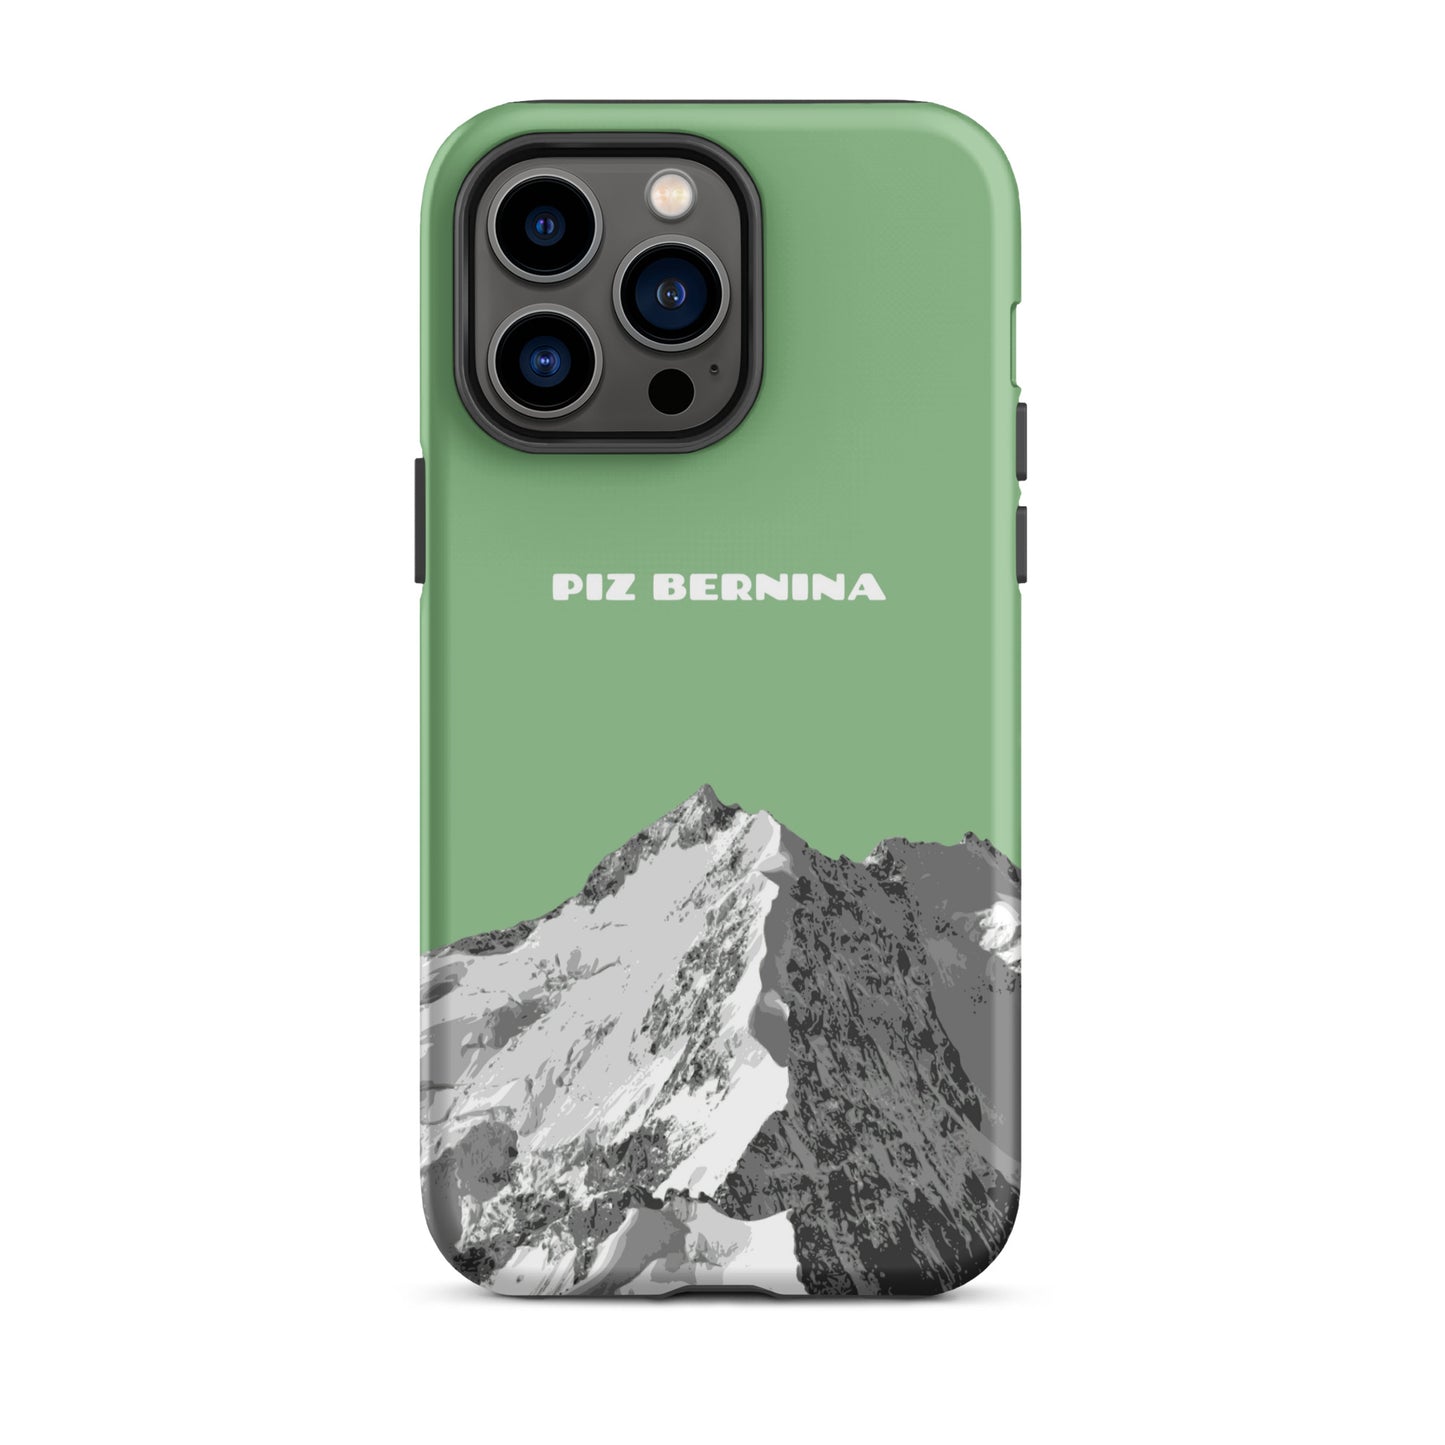 Hülle für das iPhone 14 Pro Max von Apple in der Farbe Hellgrün, dass den Piz Bernina in Graubünden zeigt.